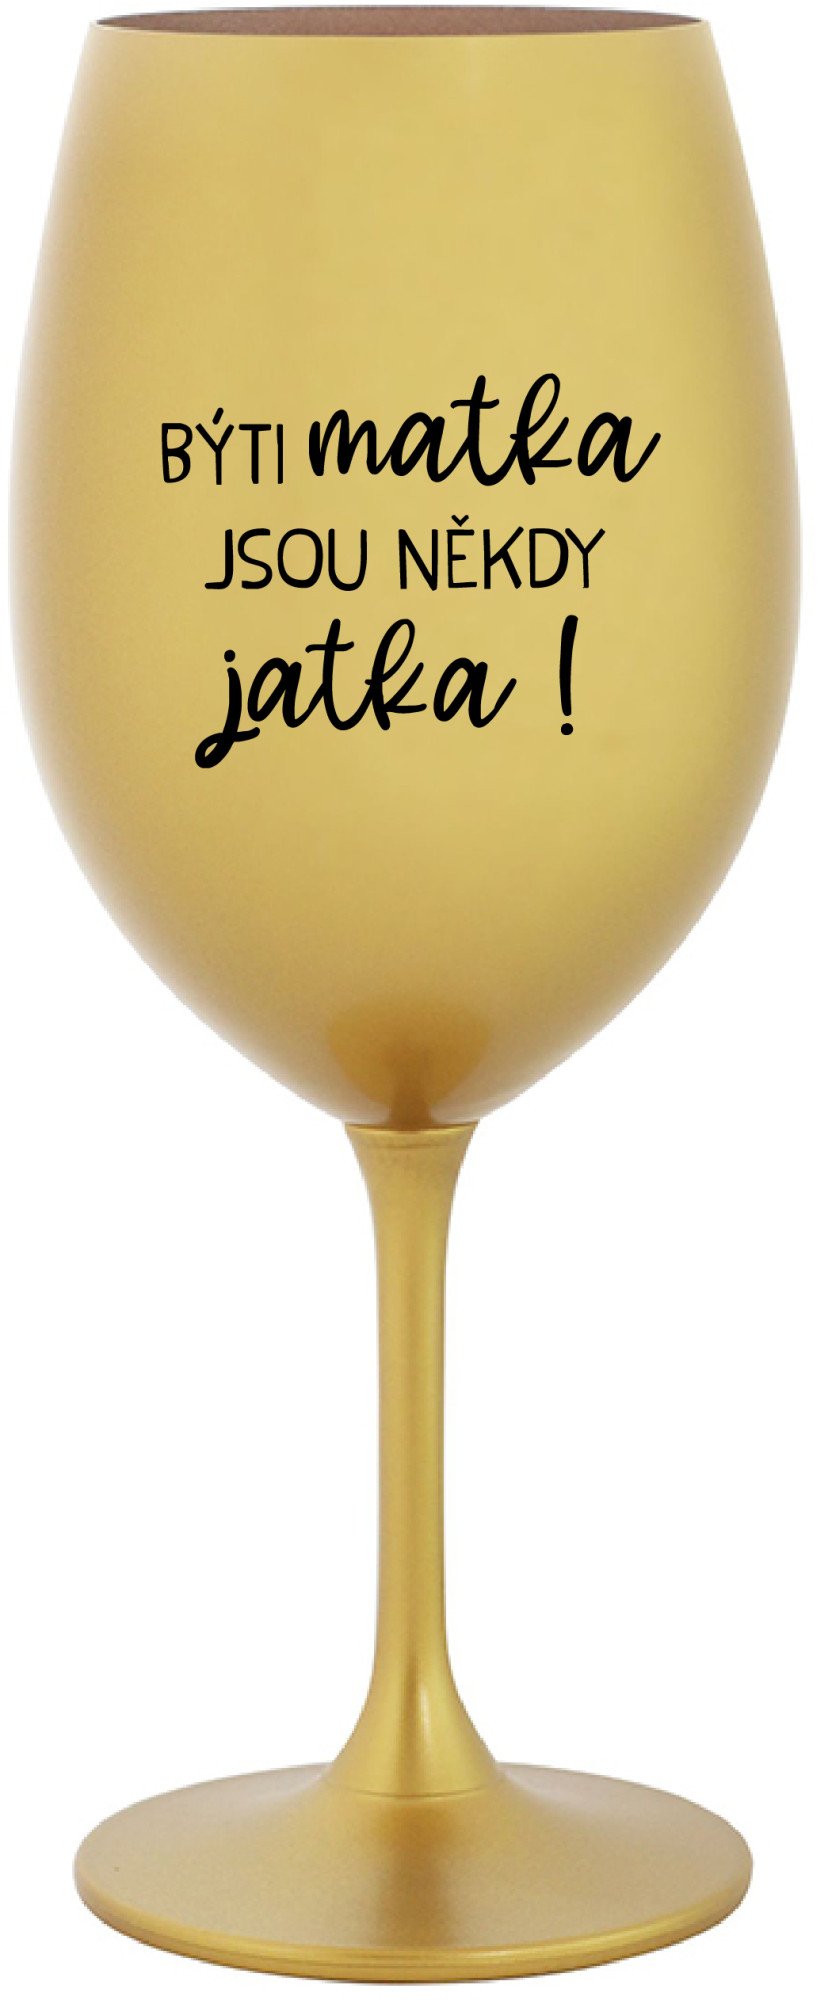 BÝTI MATKA JSOU NĚKDY JATKA! - zlatá sklenice na víno 350 ml